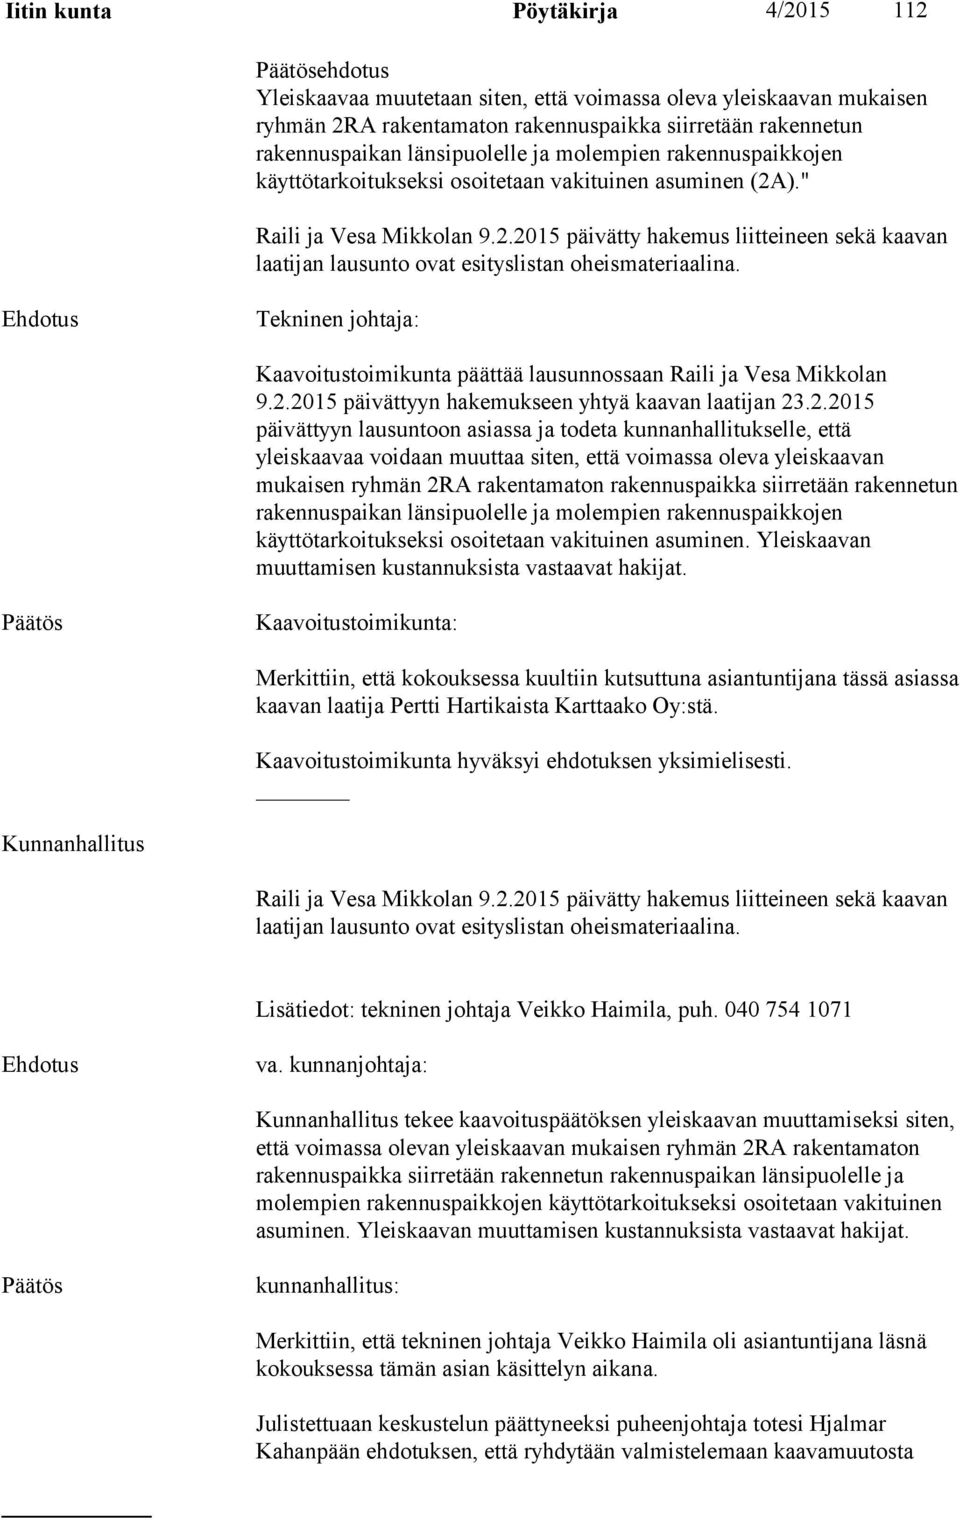 Tekninen johtaja: Kaavoitustoimikunta päättää lausunnossaan Raili ja Vesa Mikkolan 9.2.